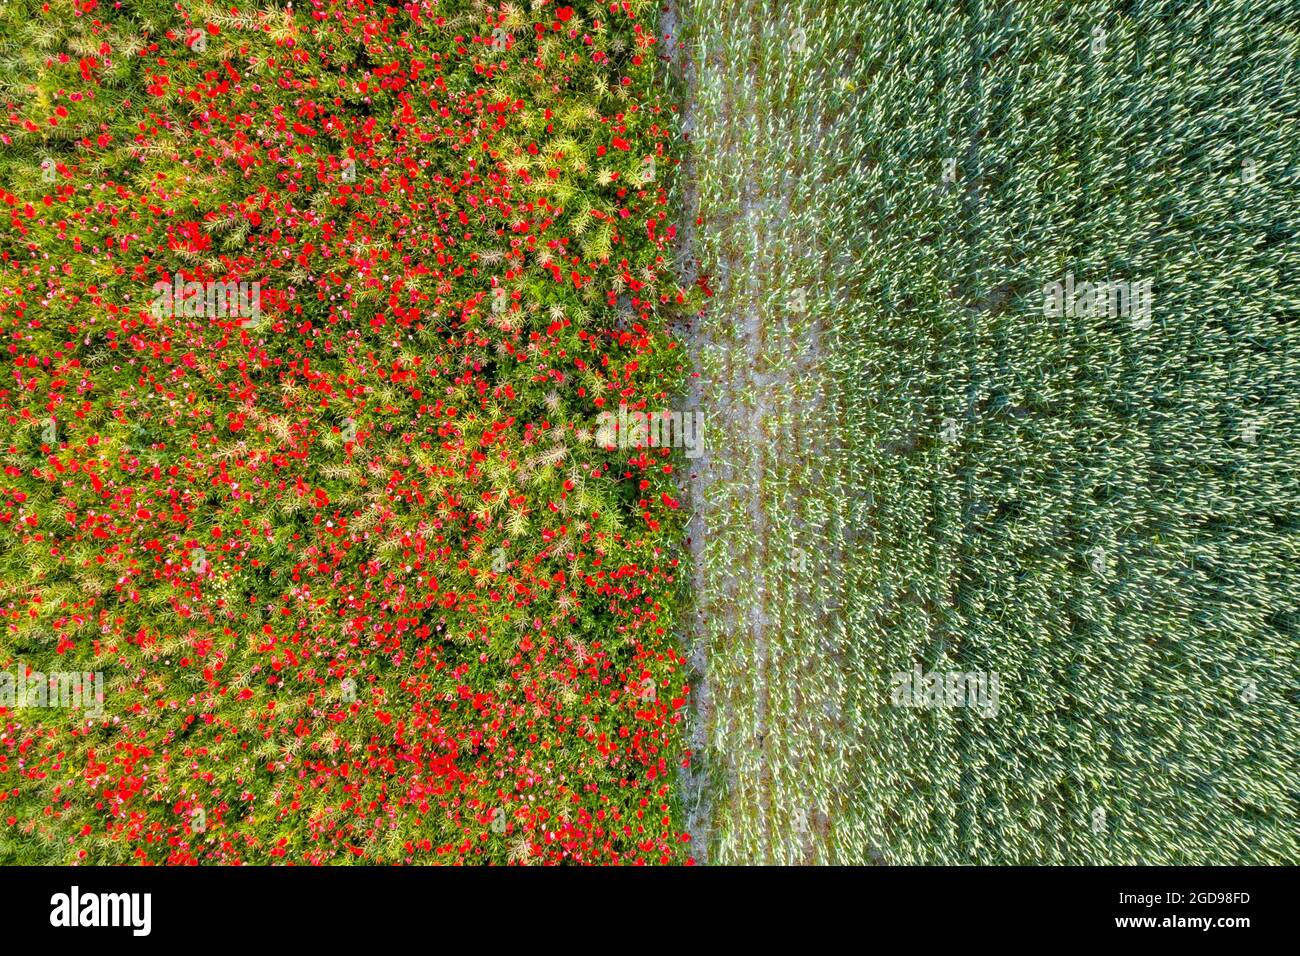 Coquelicots dans un champ de colza jouxtant un champ de blé, France, Pas de Calais, printemps Stock Photo